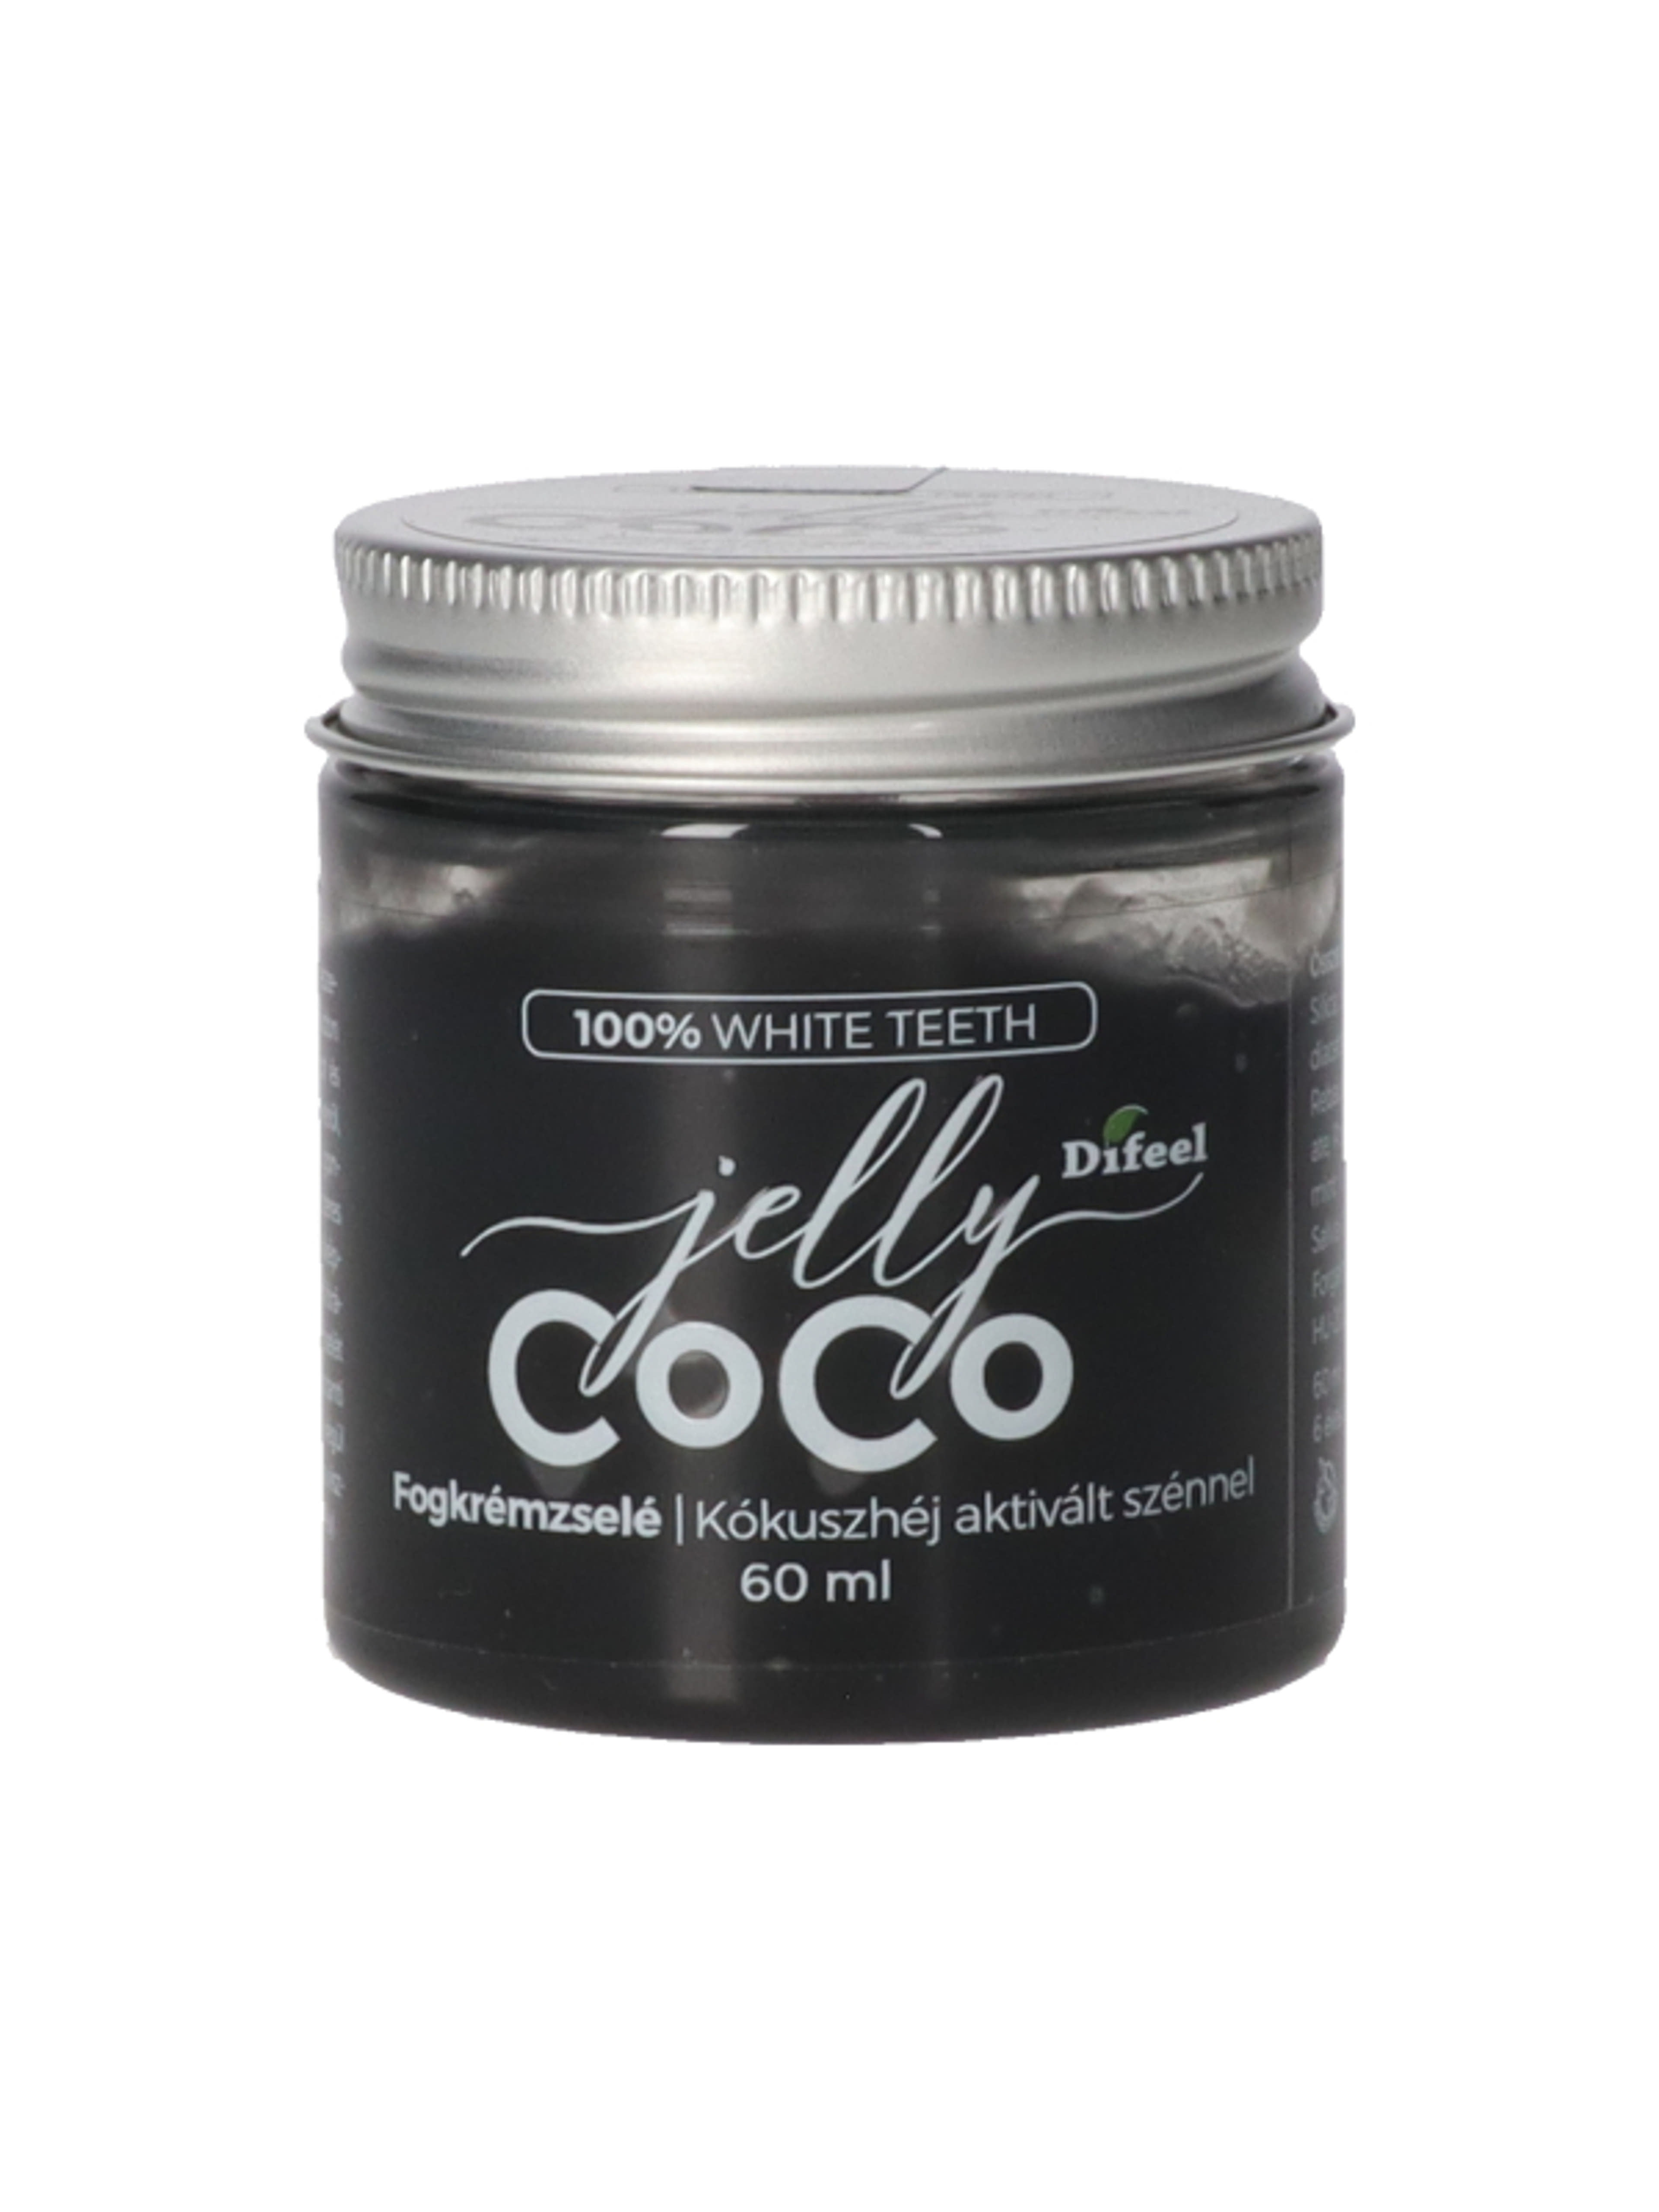 Difeel Lovely Coco fogkrémzselé - 75 ml